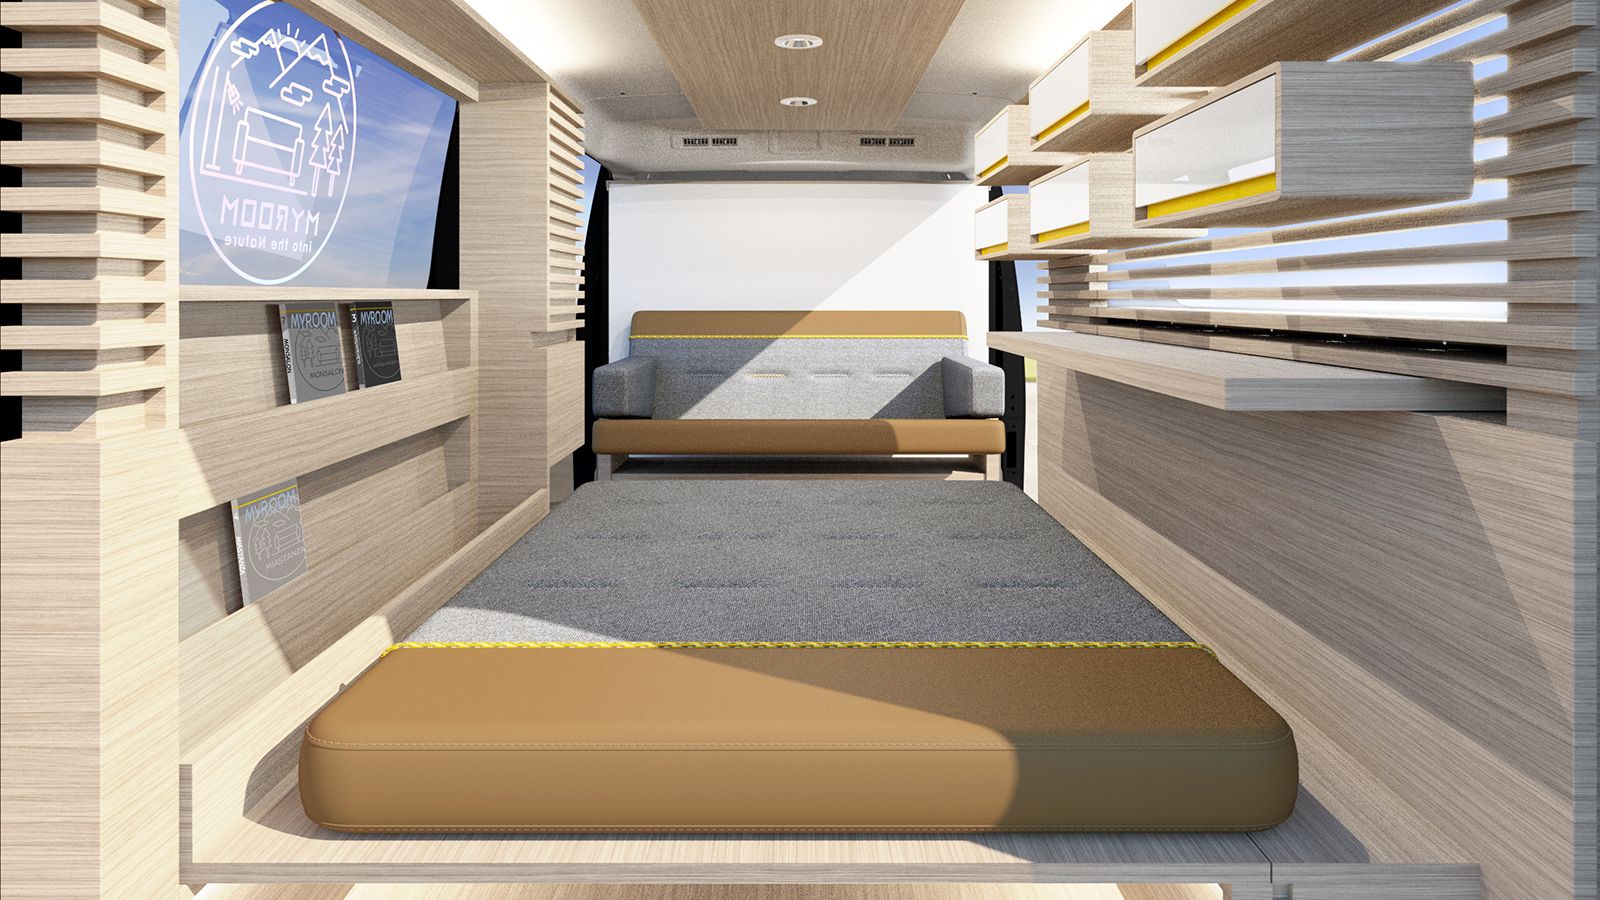 Ανέσεις και ζεν ατμόσφαιρα στο εσωτερικό του concept Nissan Caravan Myroom.